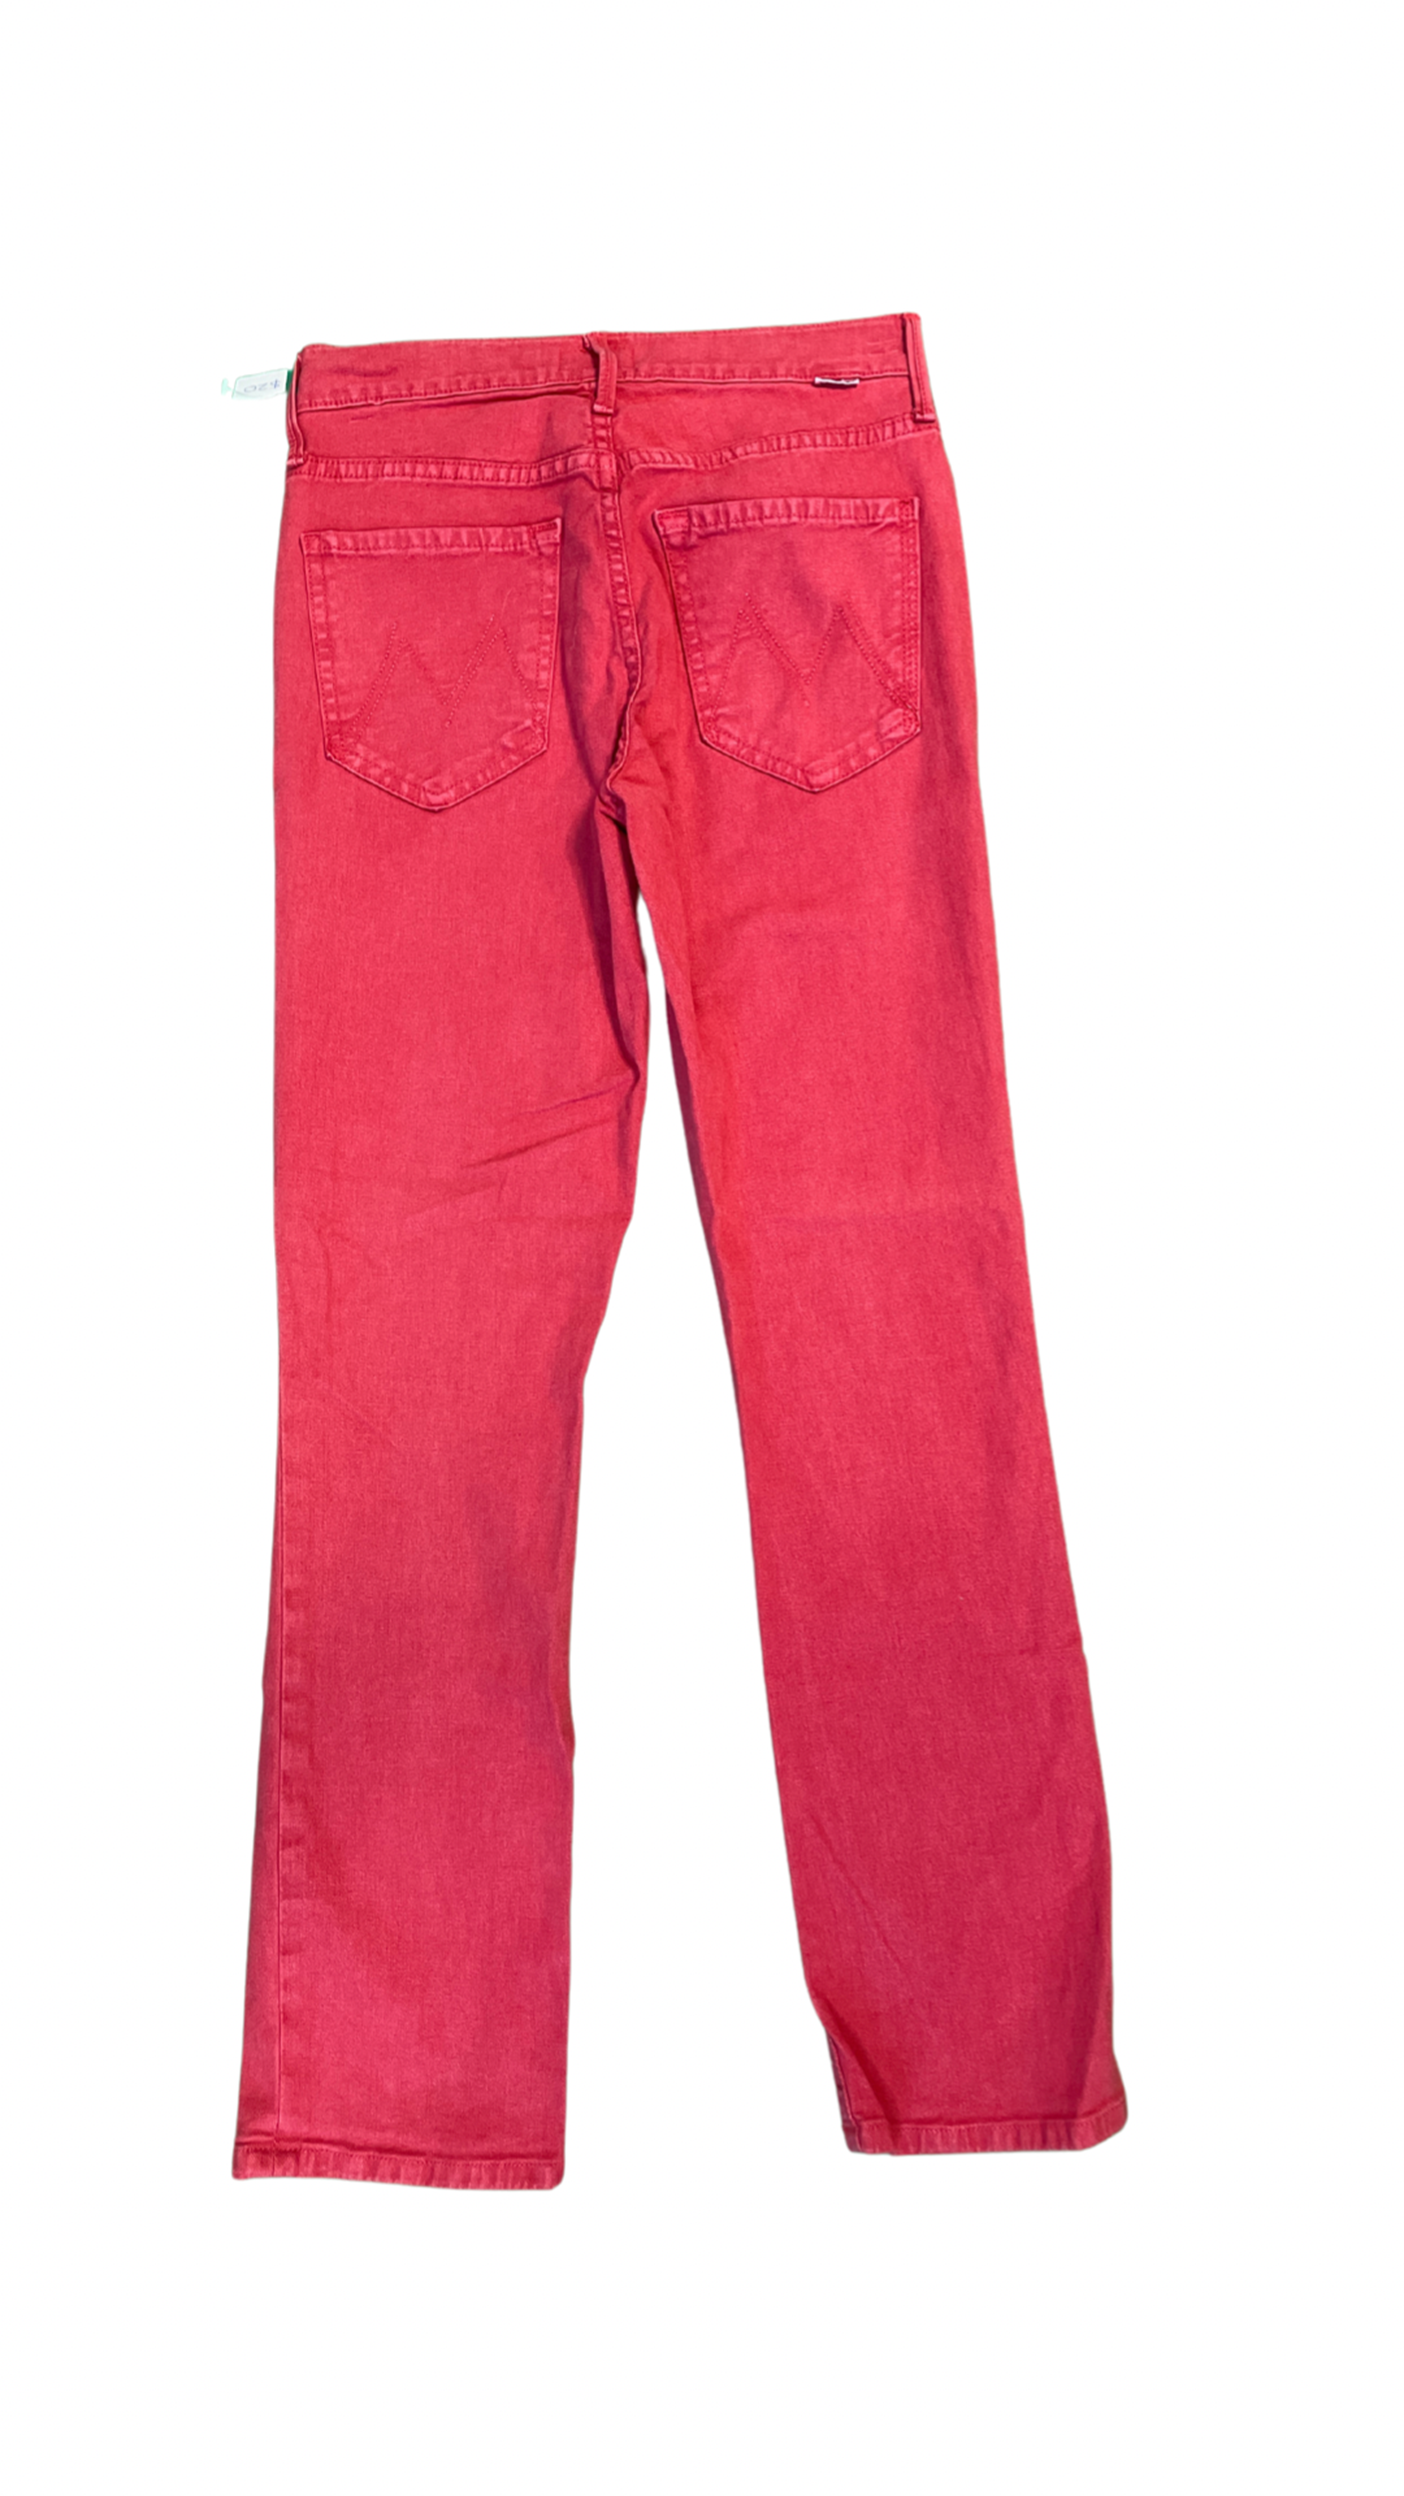 Red Denim Skinny Jeans